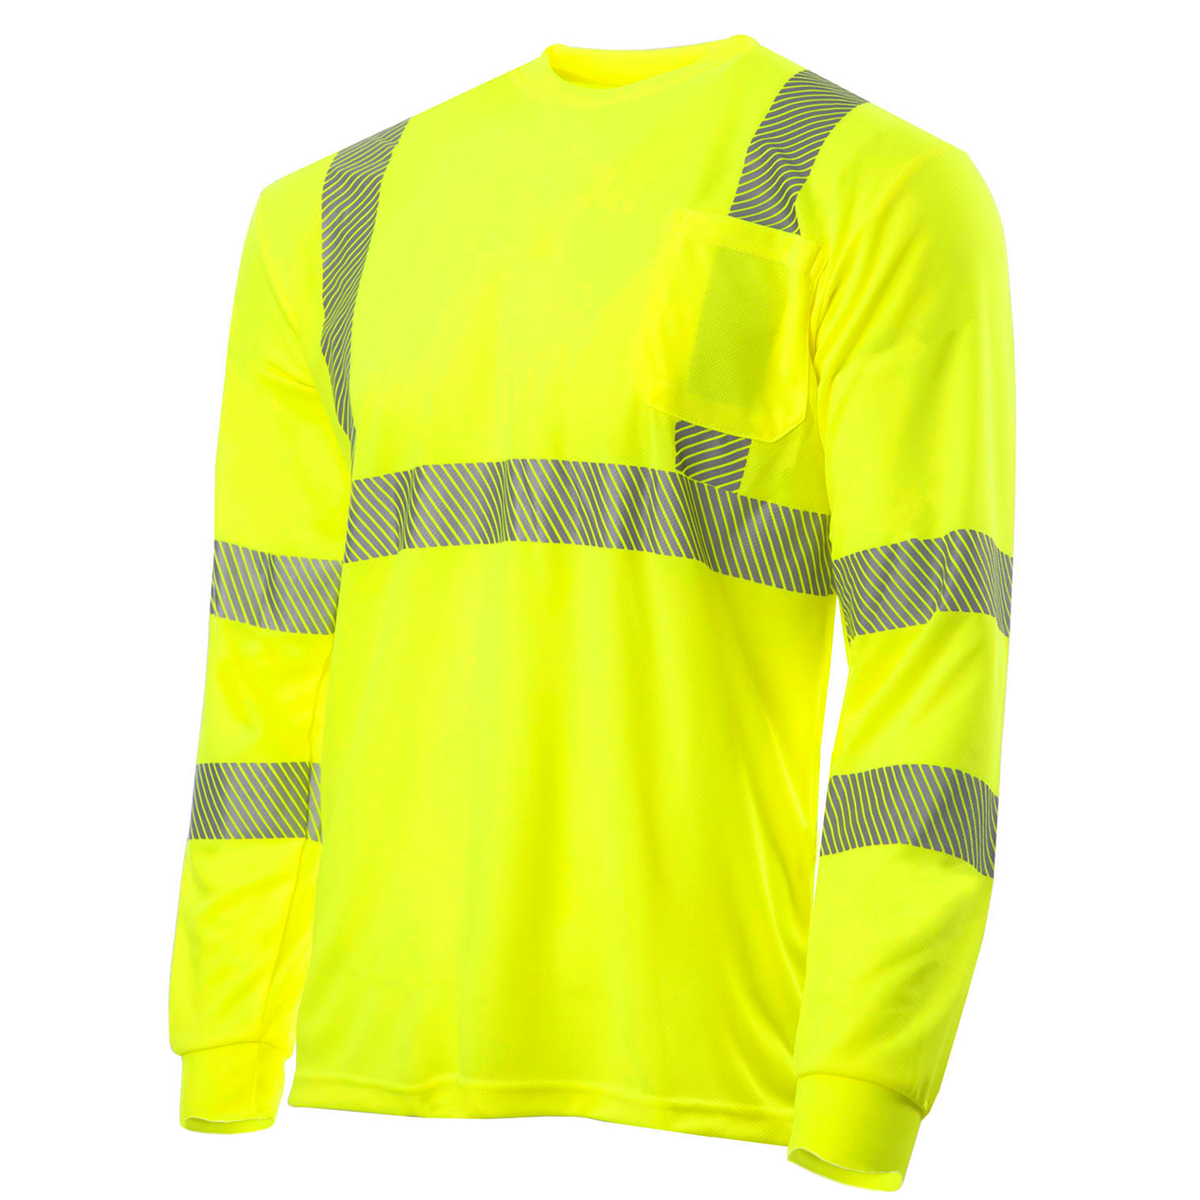 JORESTECH Hi-Vis Long Sleeve Safety Shirt, Heat Transfer, ANSI Class 2 (Yellow, 3XL)